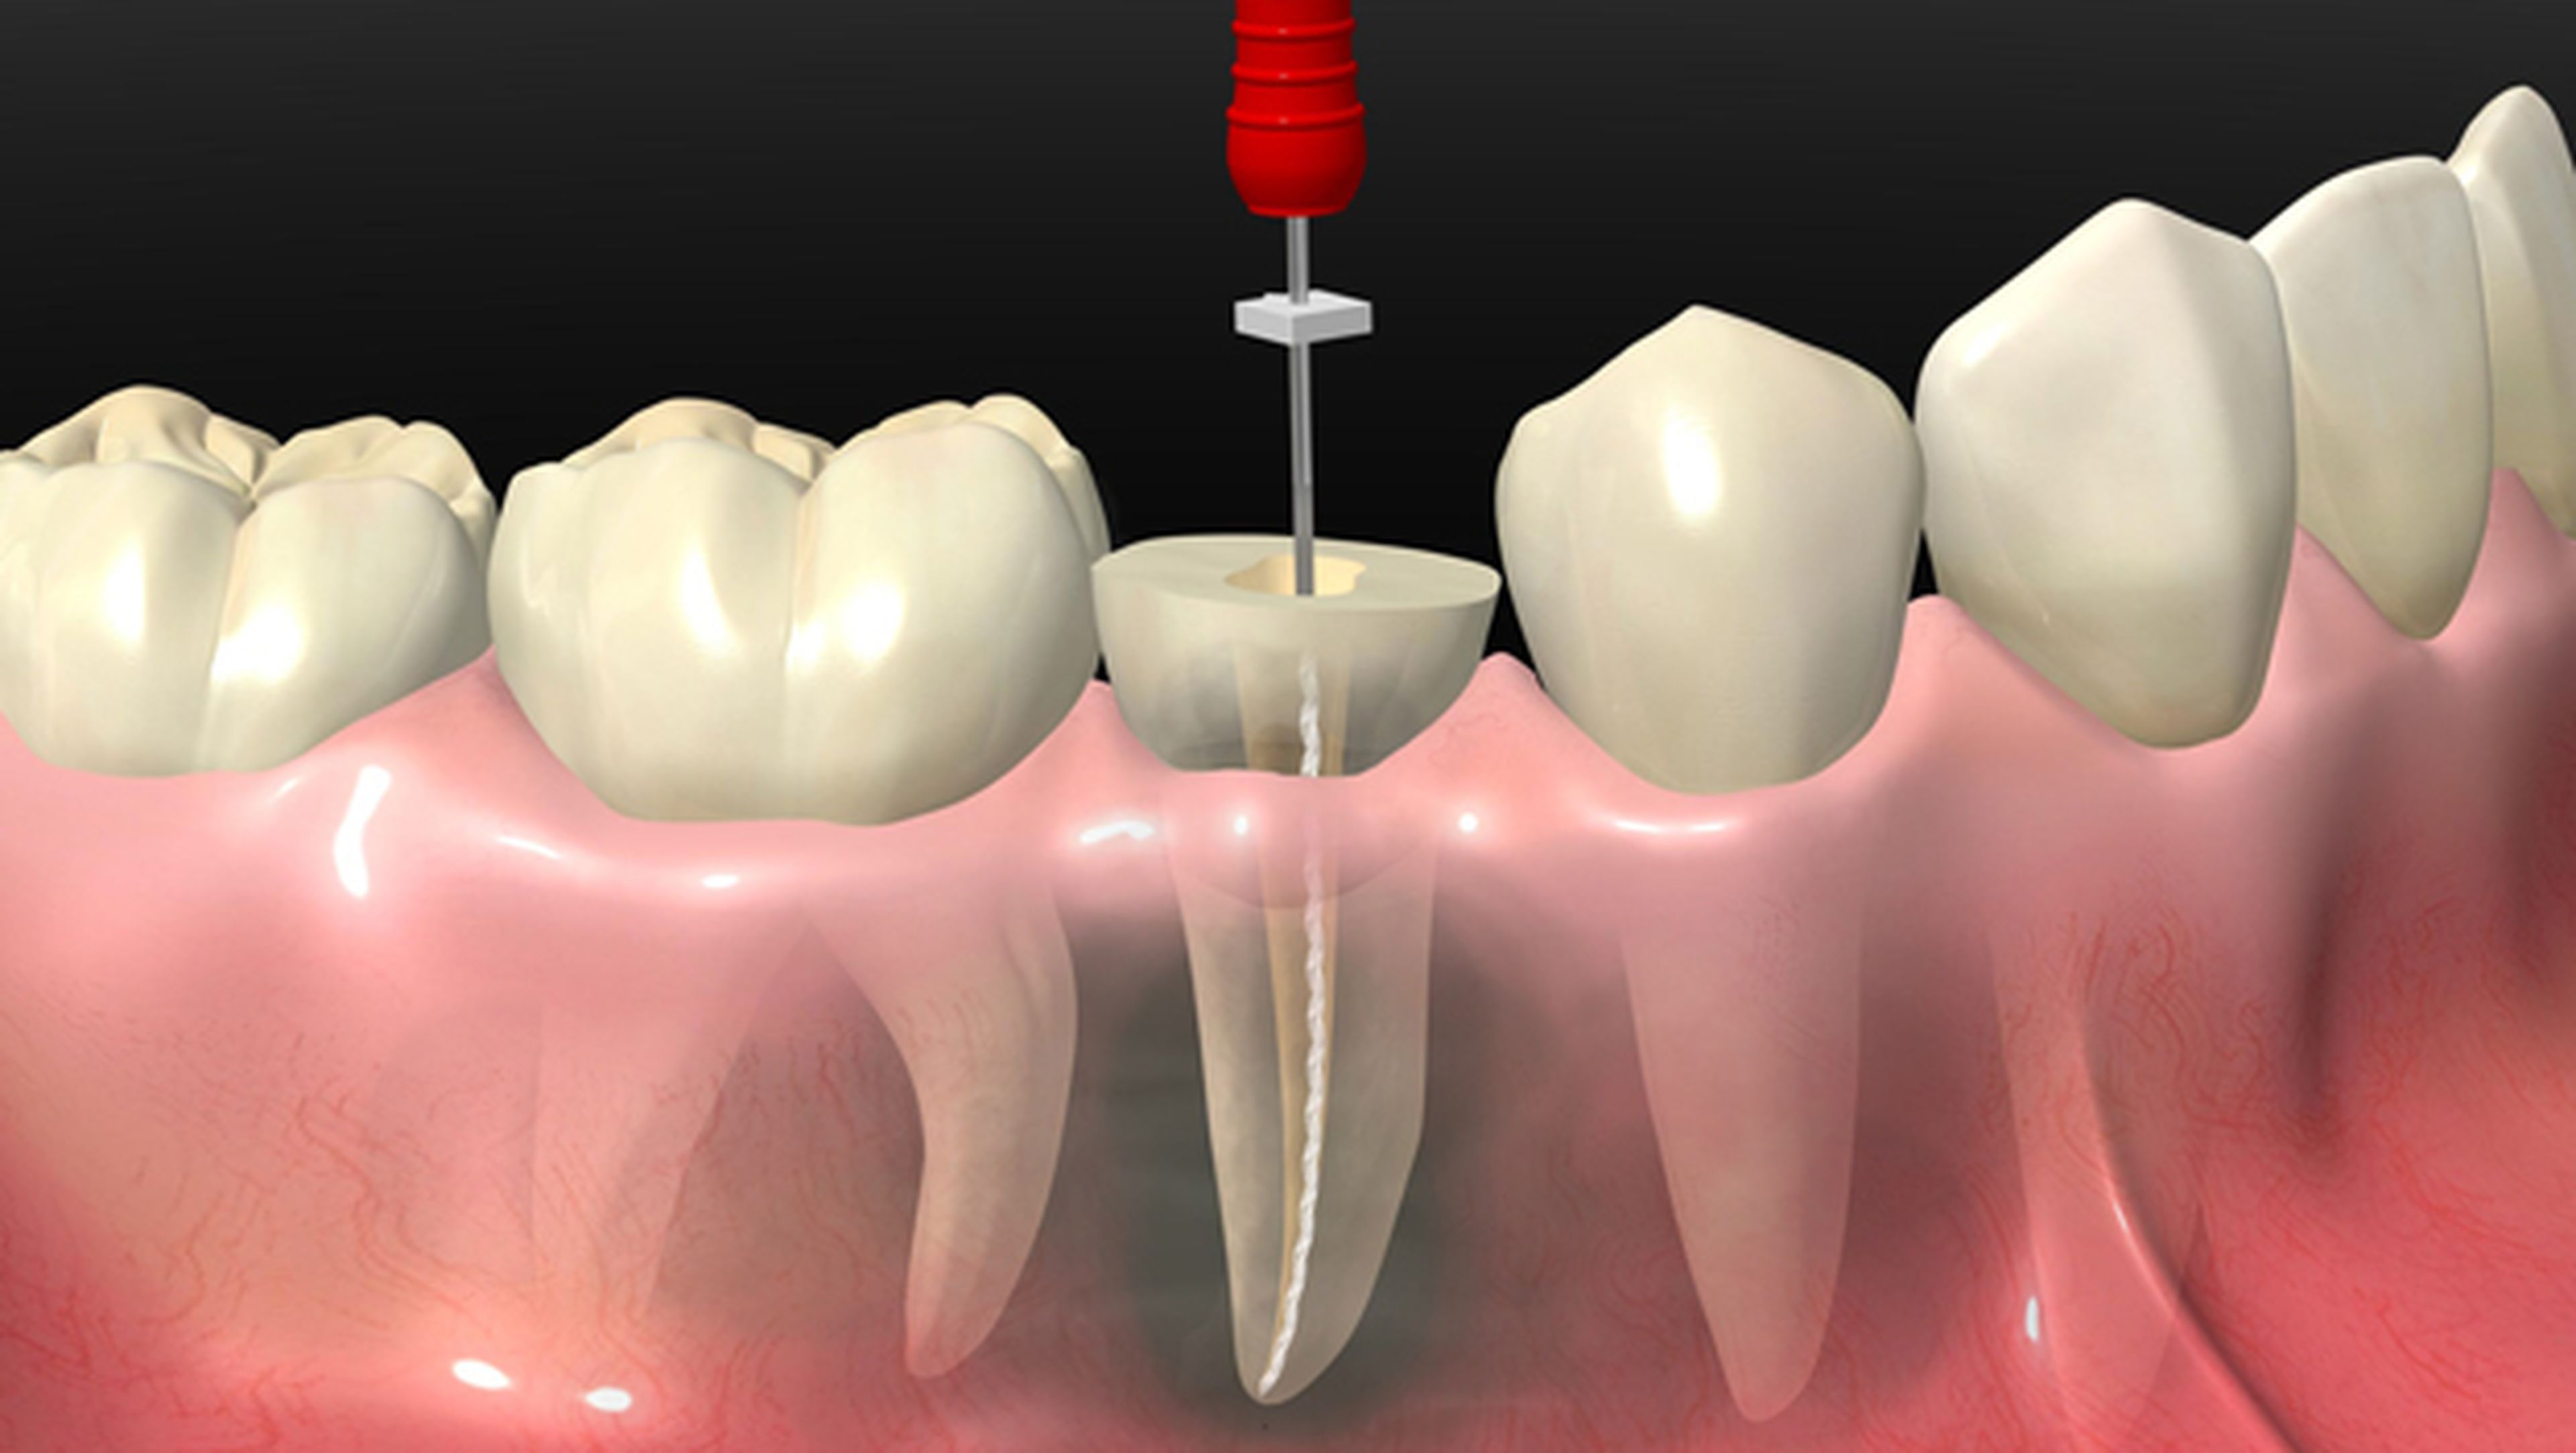 Llega la alternativa a la endodoncia: regenerar dientes